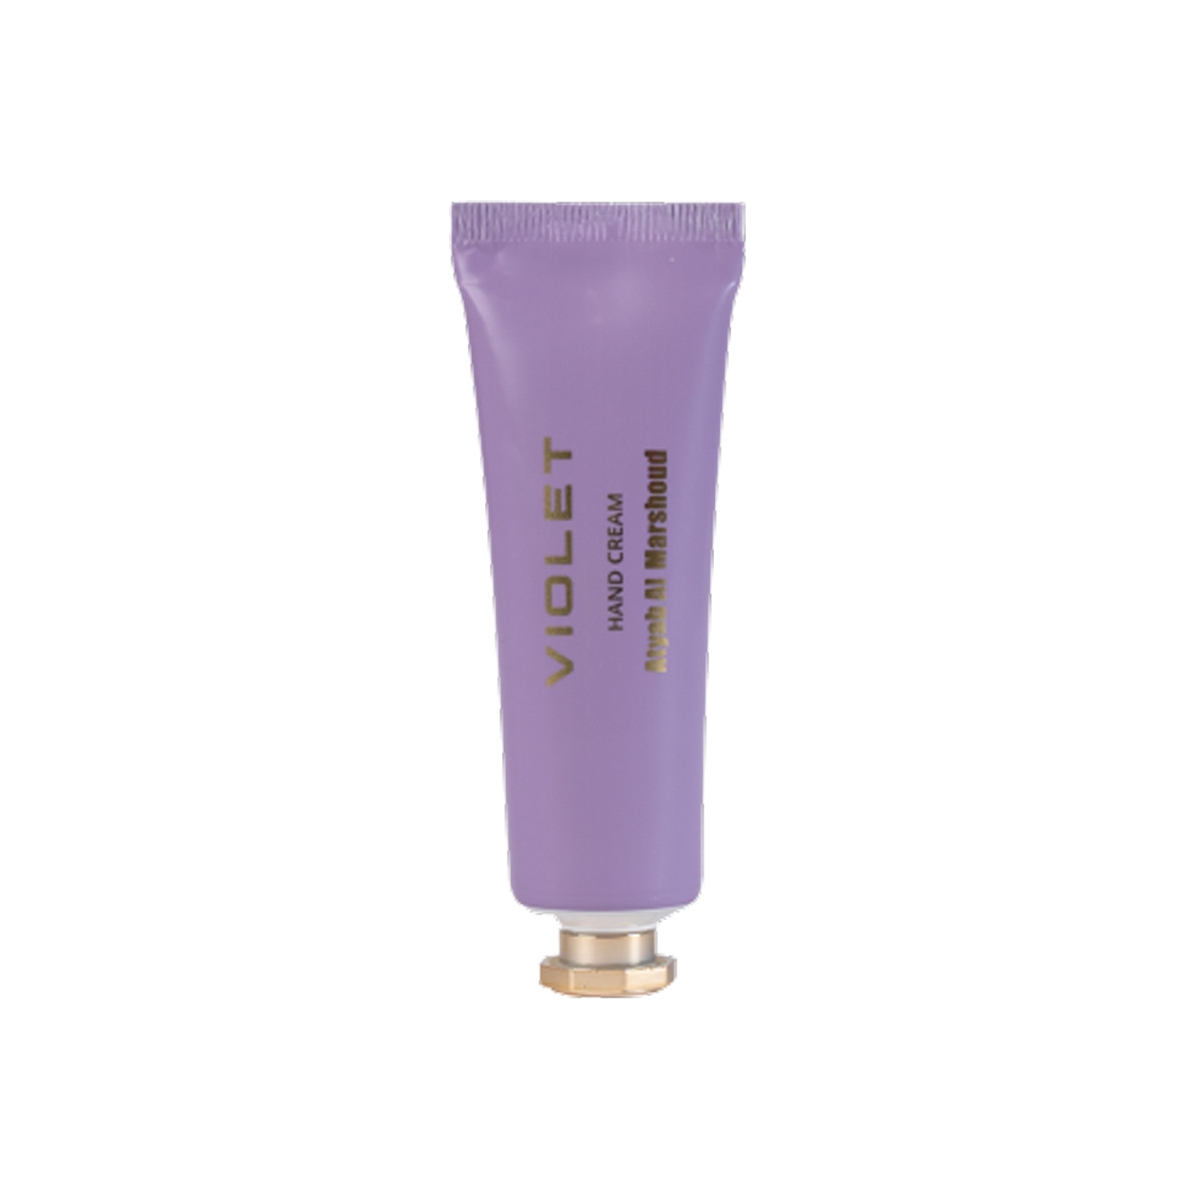 Violet Hand Cream Atyab al Marshoud Perfumes, Body Care, Arada Perfumes